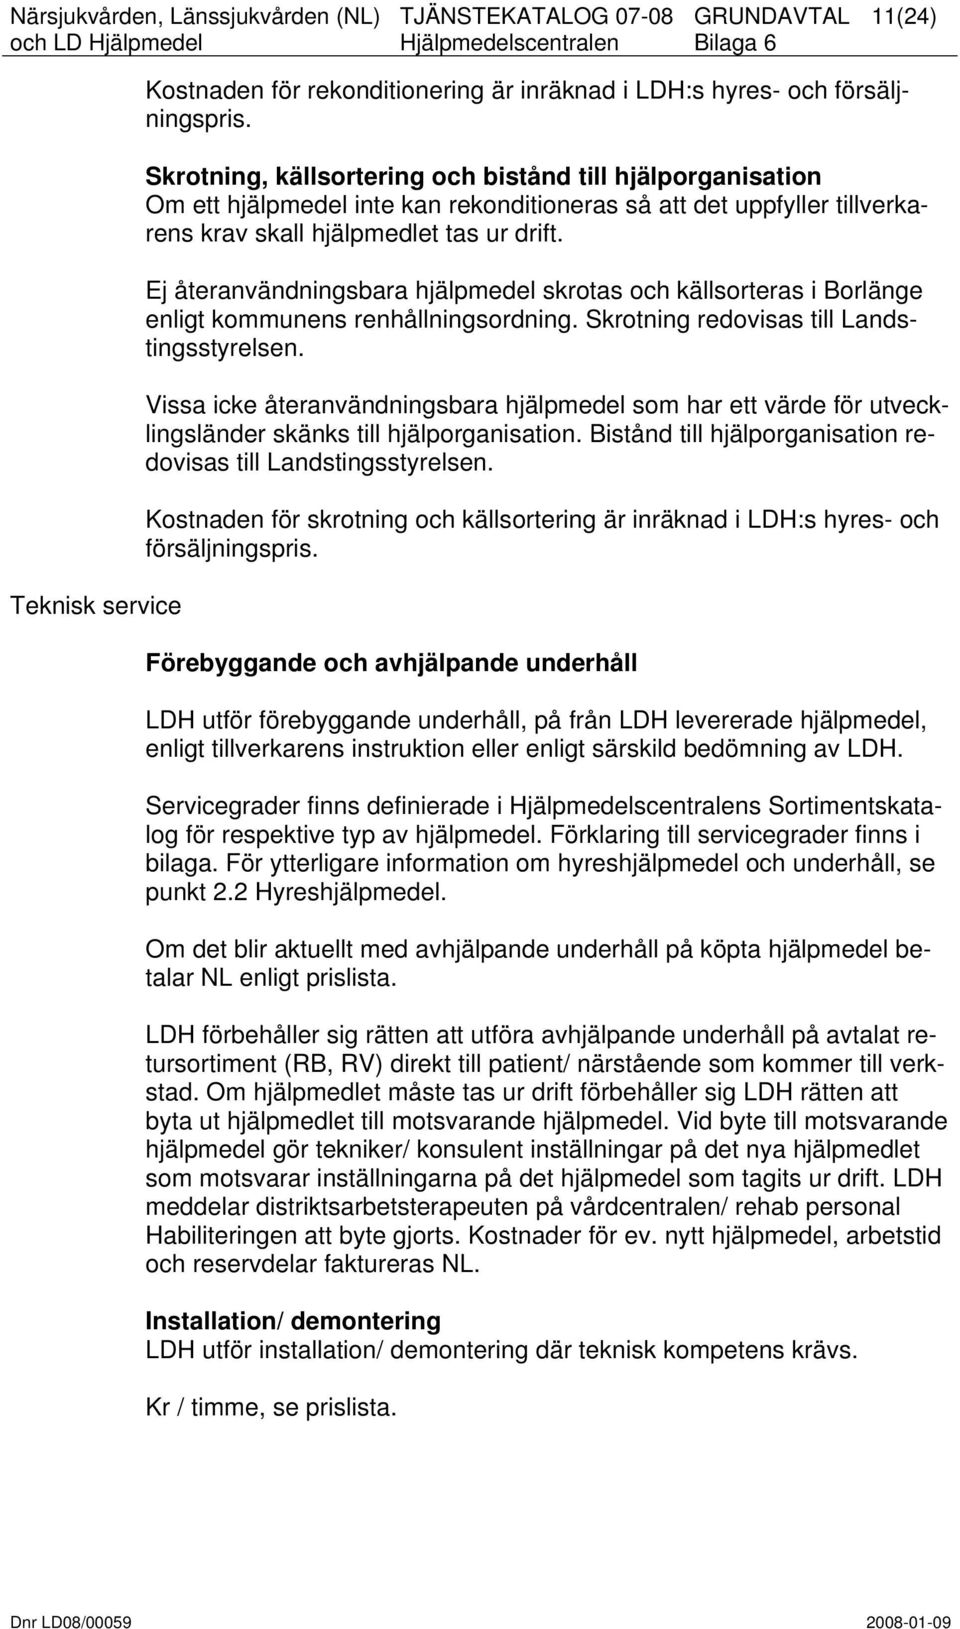 Ej återanvändningsbara hjälpmedel skrotas och källsorteras i Borlänge enligt kommunens renhållningsordning. Skrotning redovisas till Landstingsstyrelsen.